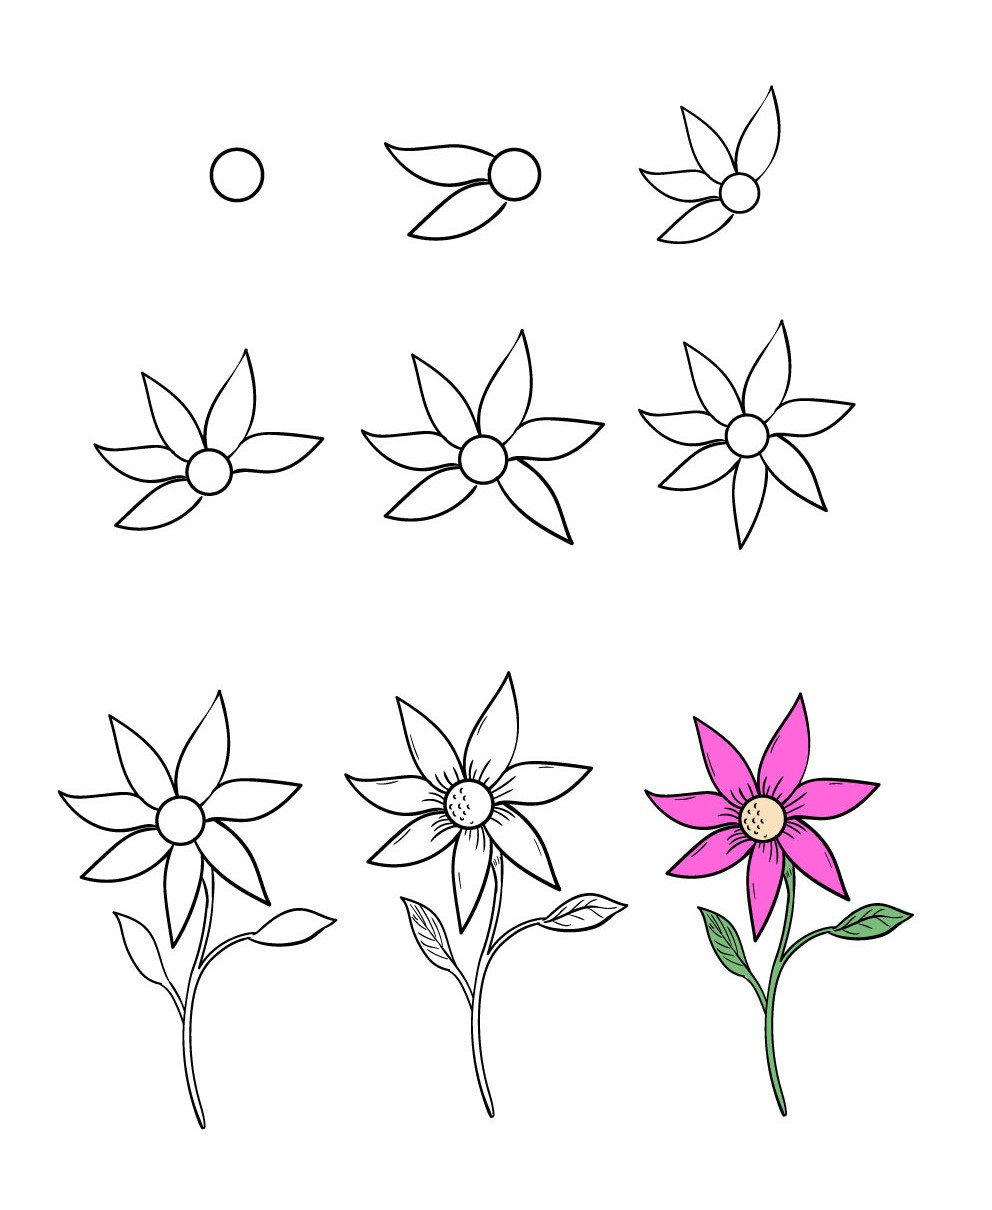 Hình Vẽ Bông Hoa Đẹp 3D 5 Cánh Đơn Giản Dễ Vẽ Nhất